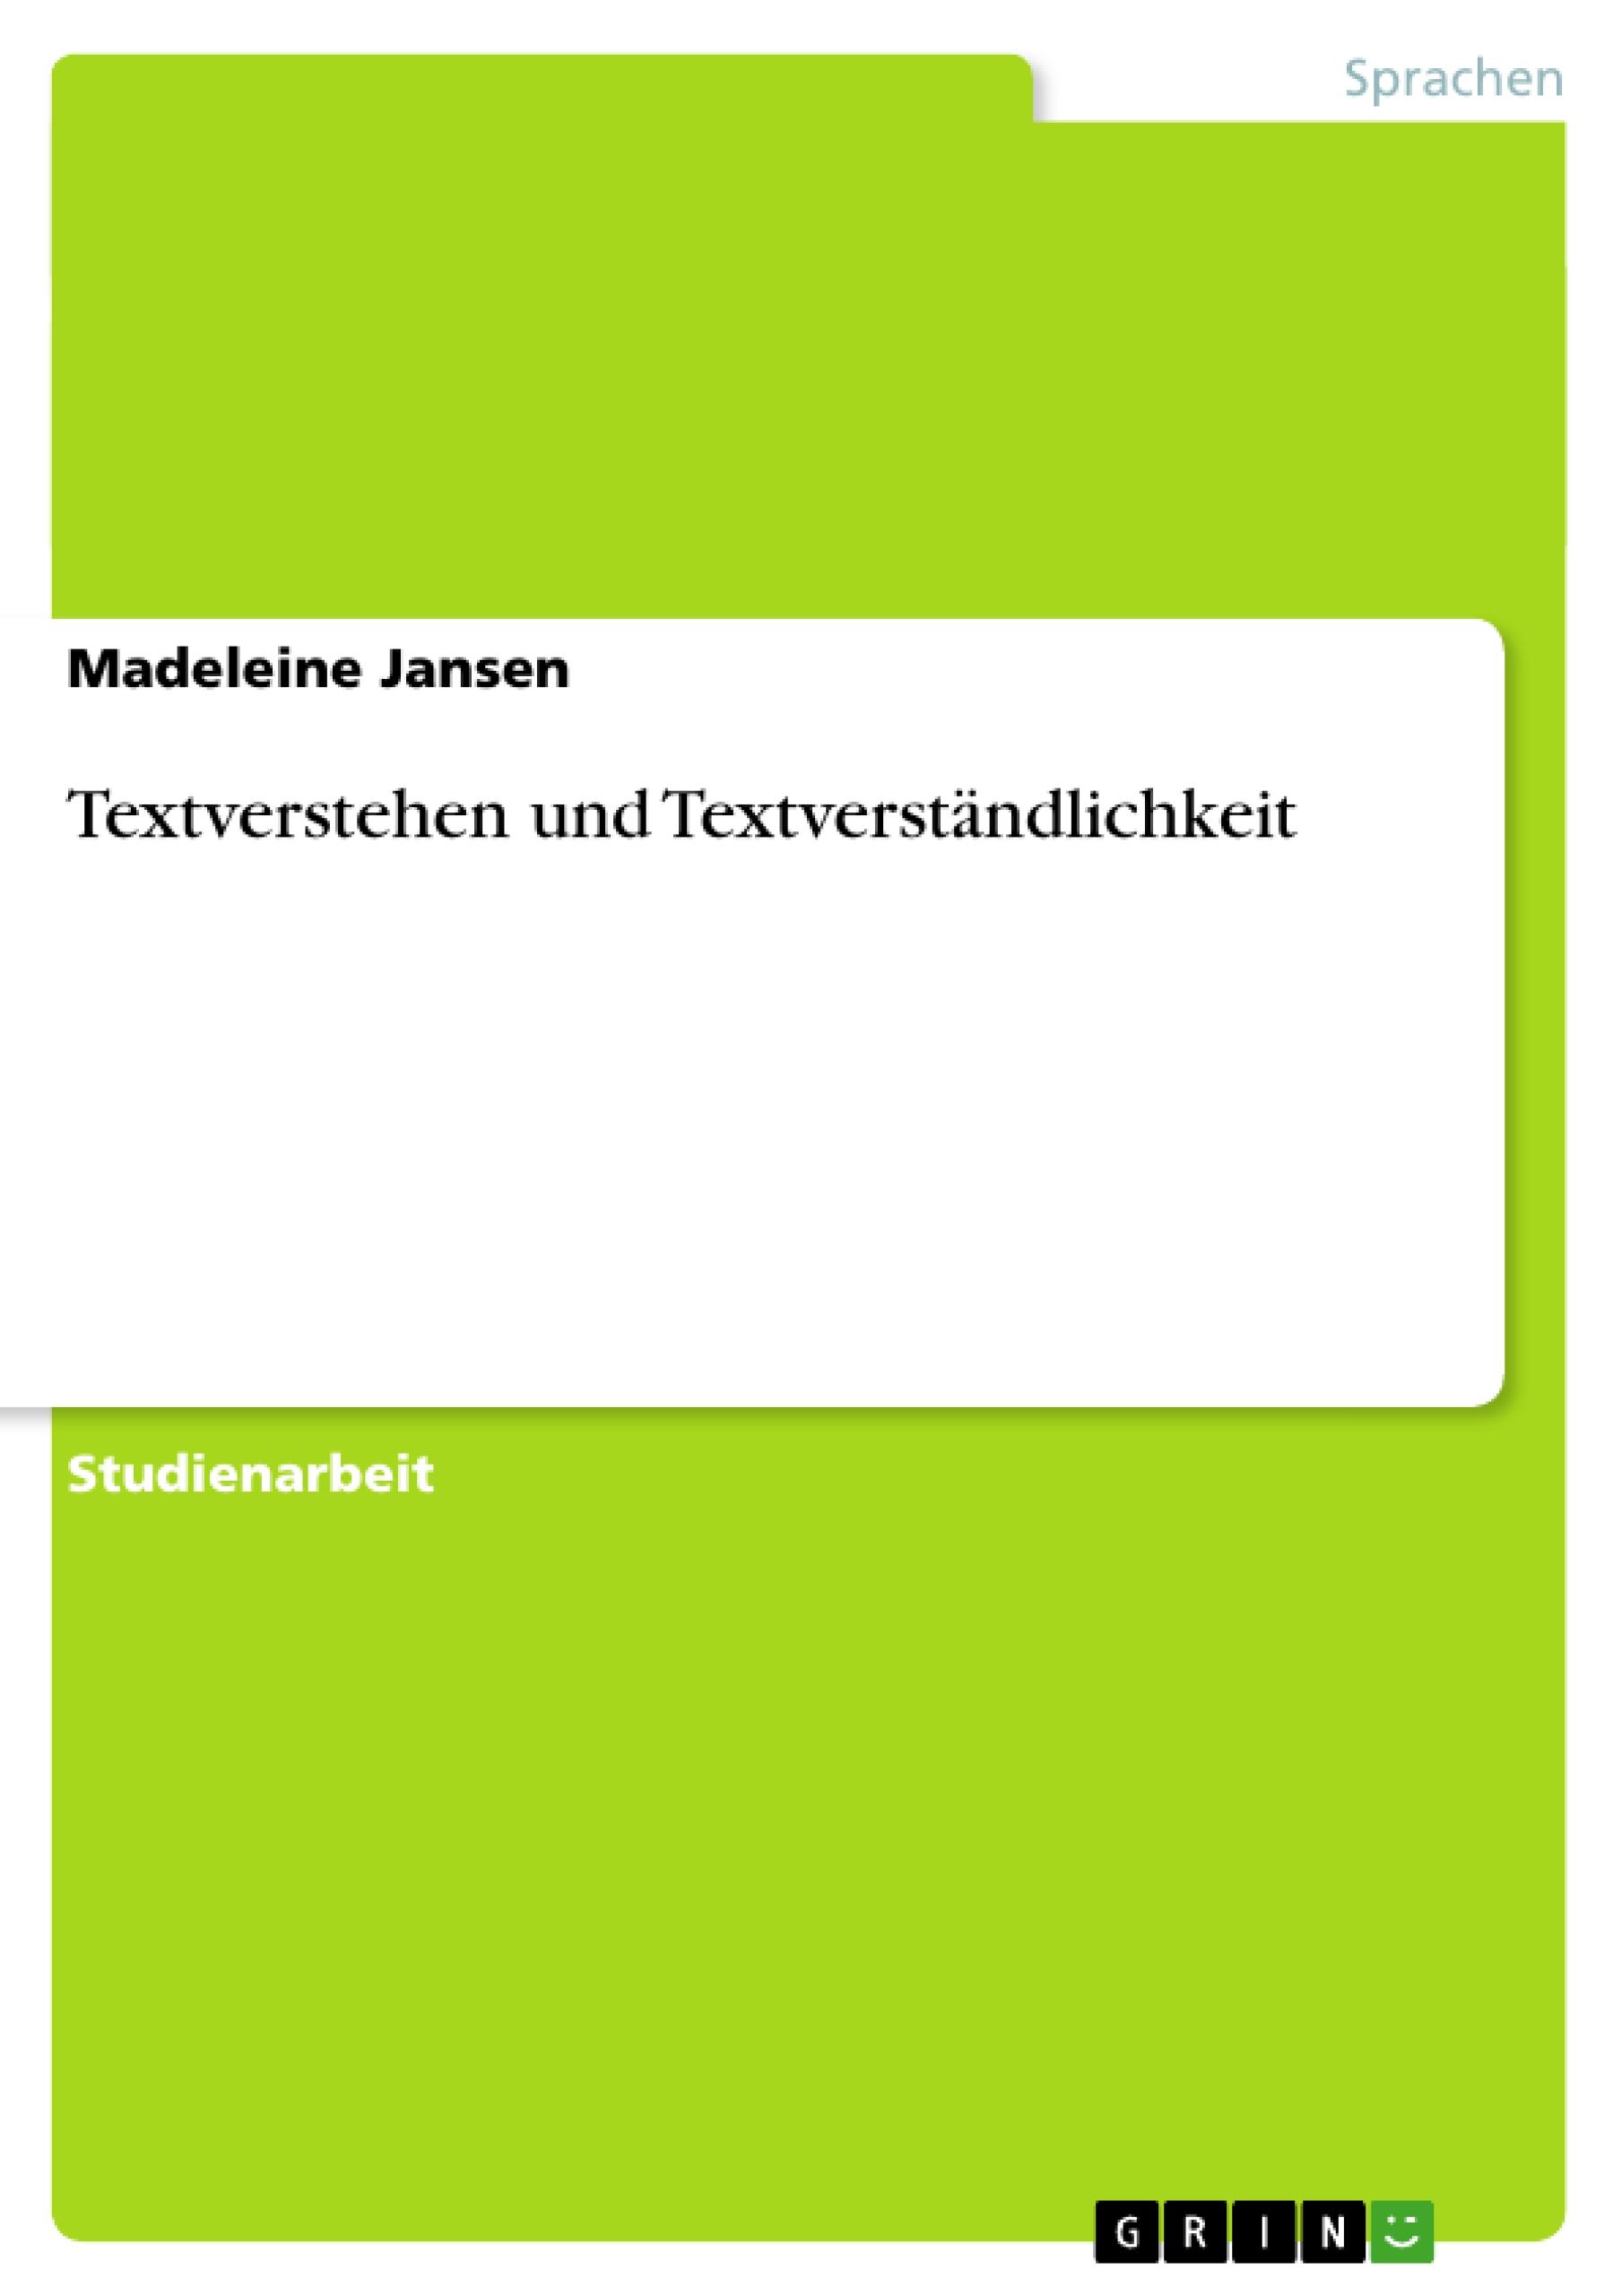 Textverstehen und Textverstaendlichkeit - Jansen, Madeleine